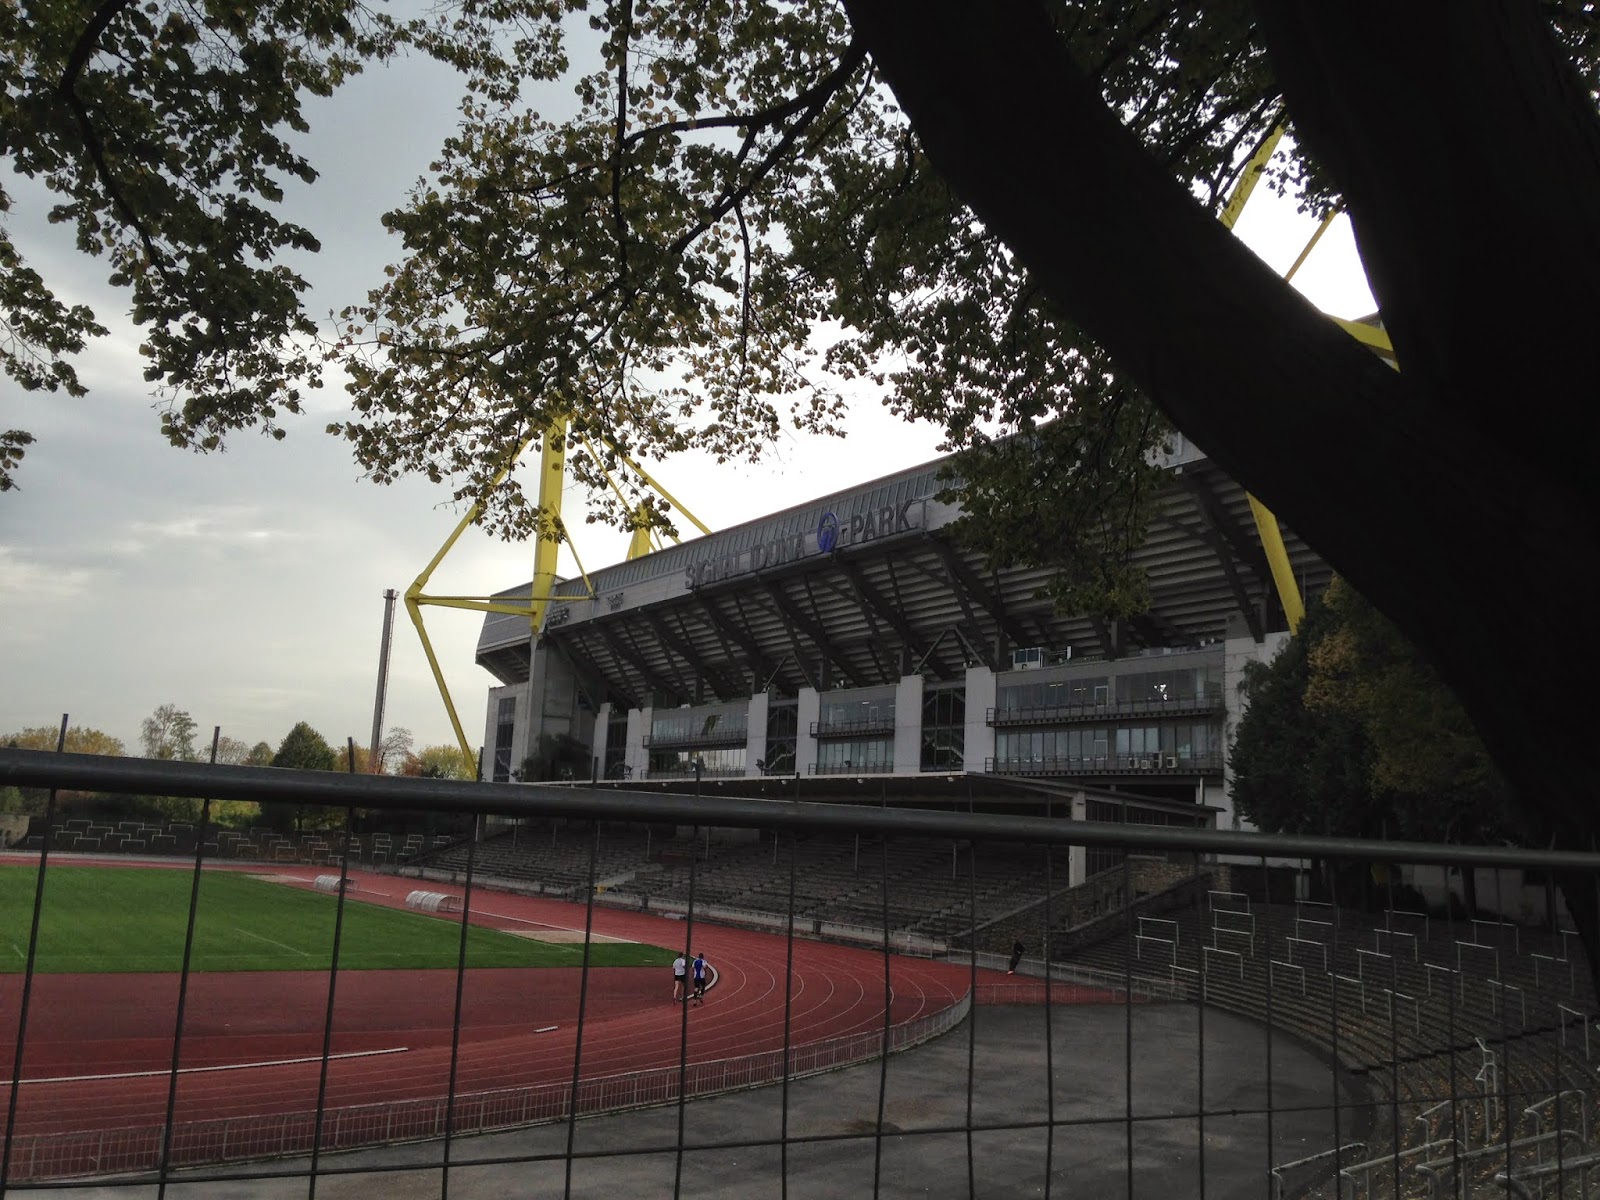 Stadion Rote Erde seit 1926